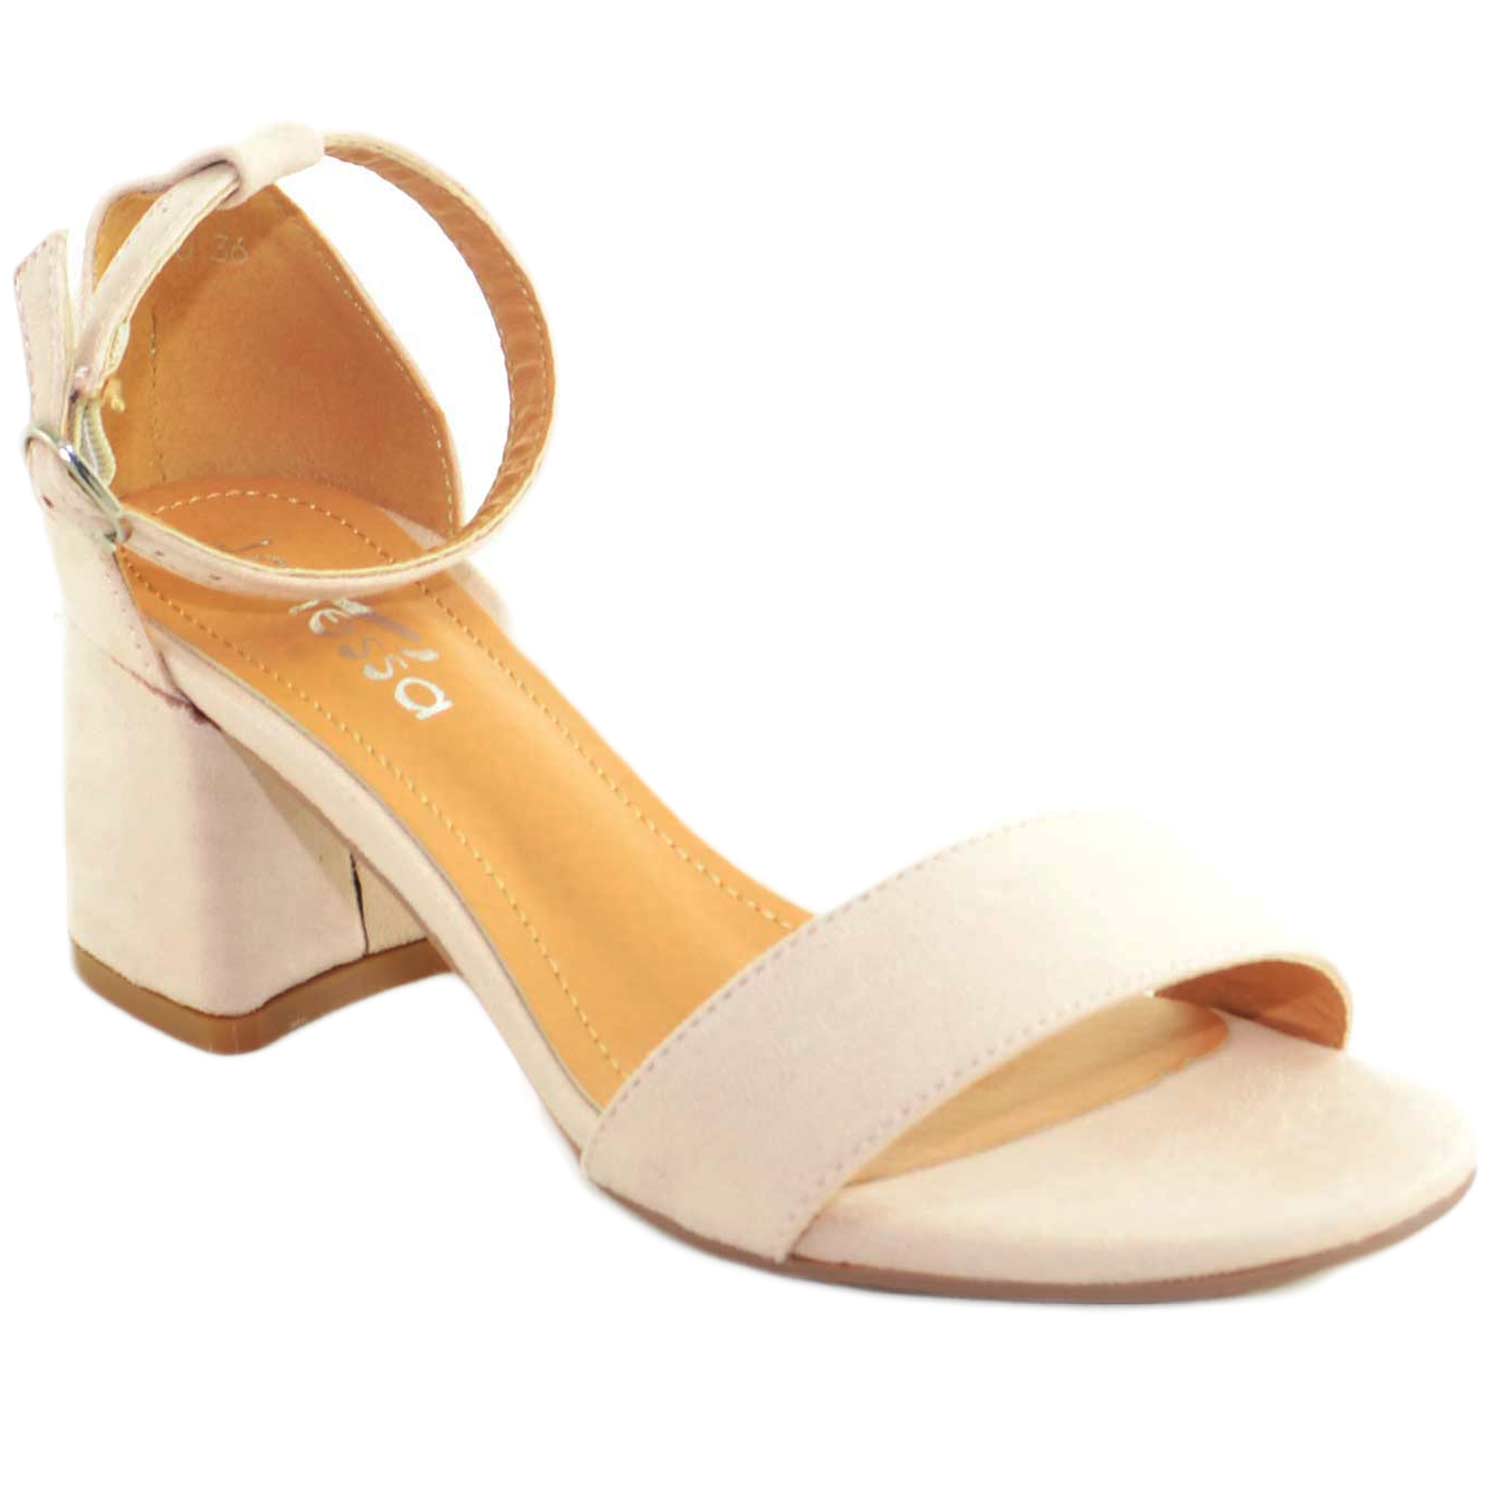 Sandalo con tacco alto e plateau allacciato alla caviglia color beige estate 2018 glamour CHIC